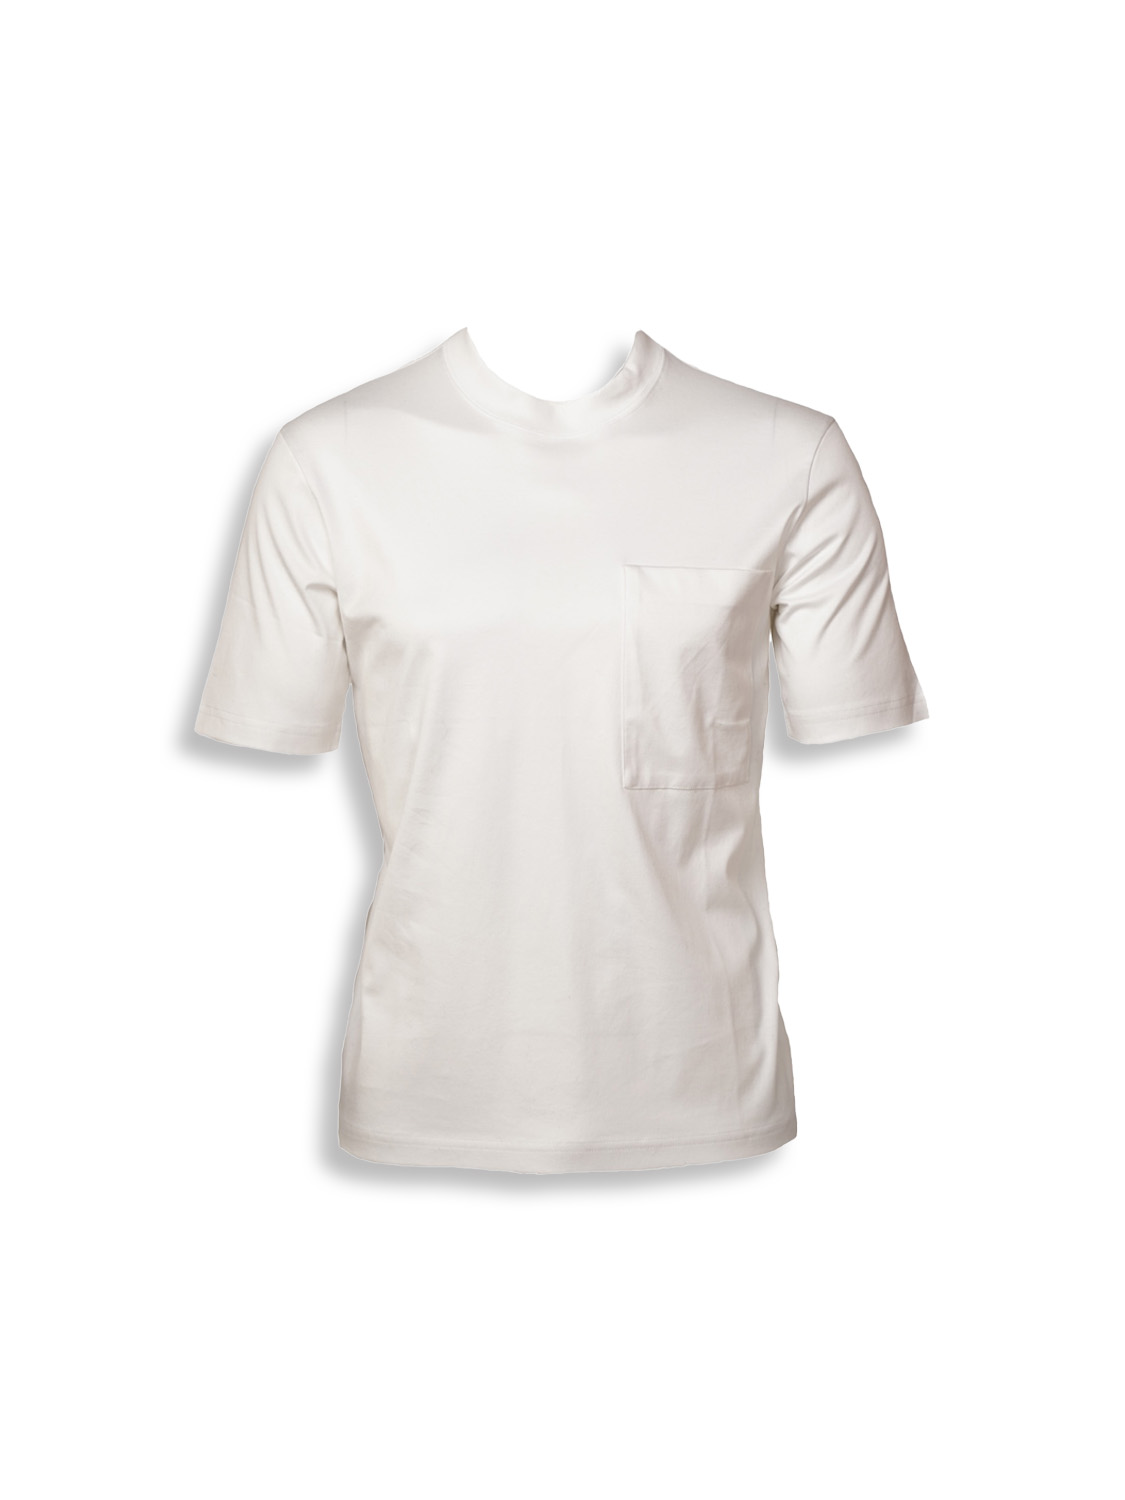 Stefan Brandt Eike – T-Shirt aus Baumwolle weiß M